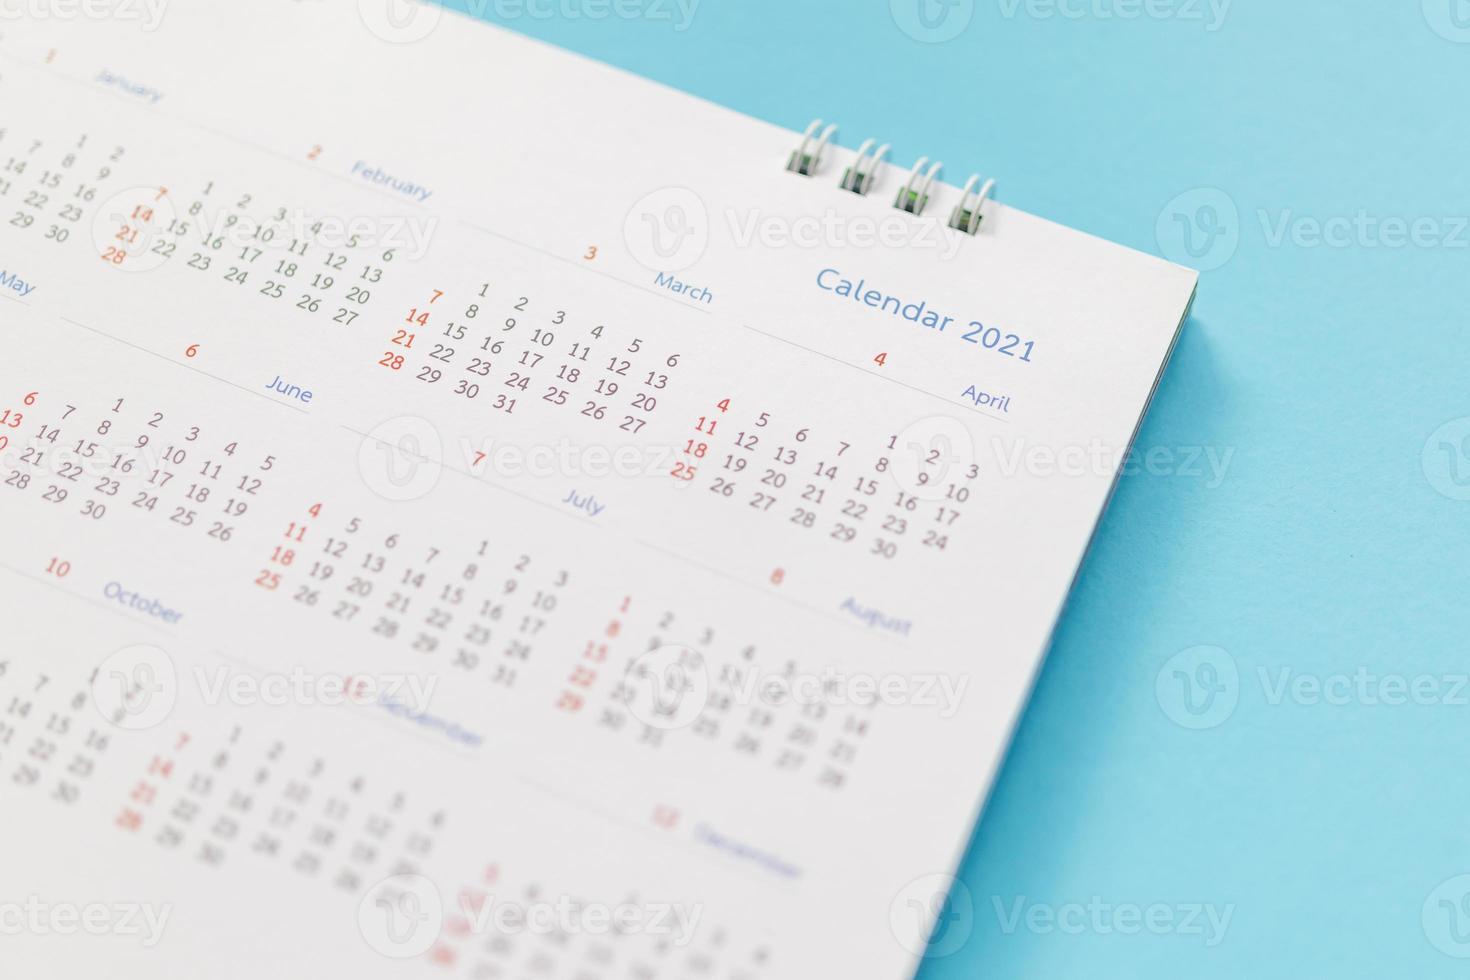 página do calendário 2021 no conceito de reunião de compromisso de planejamento de negócios de fundo azul foto